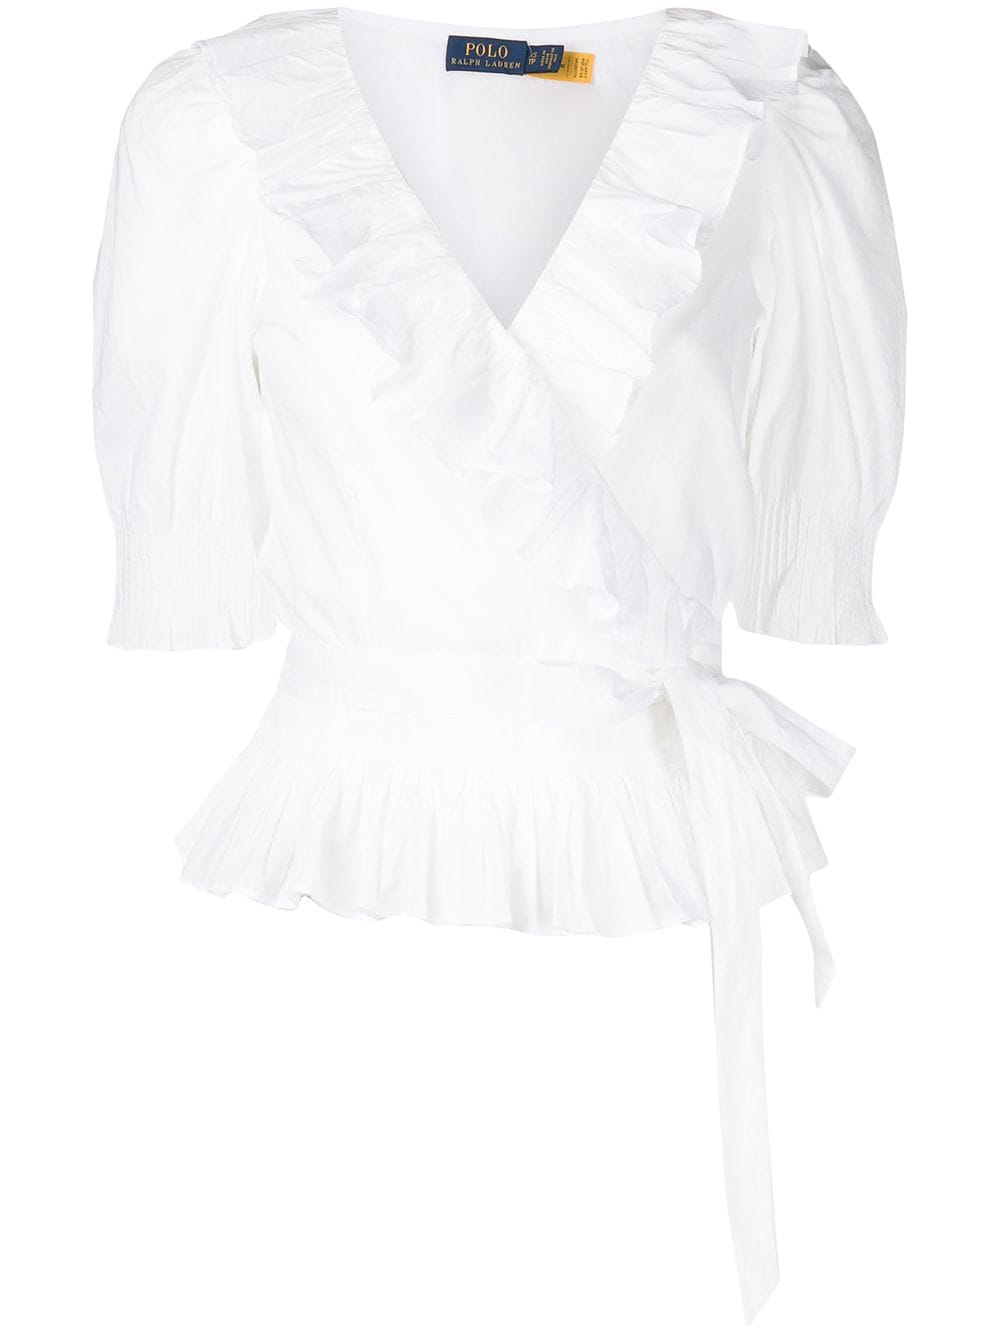 фото Polo ralph lauren укороченная блузка с запахом